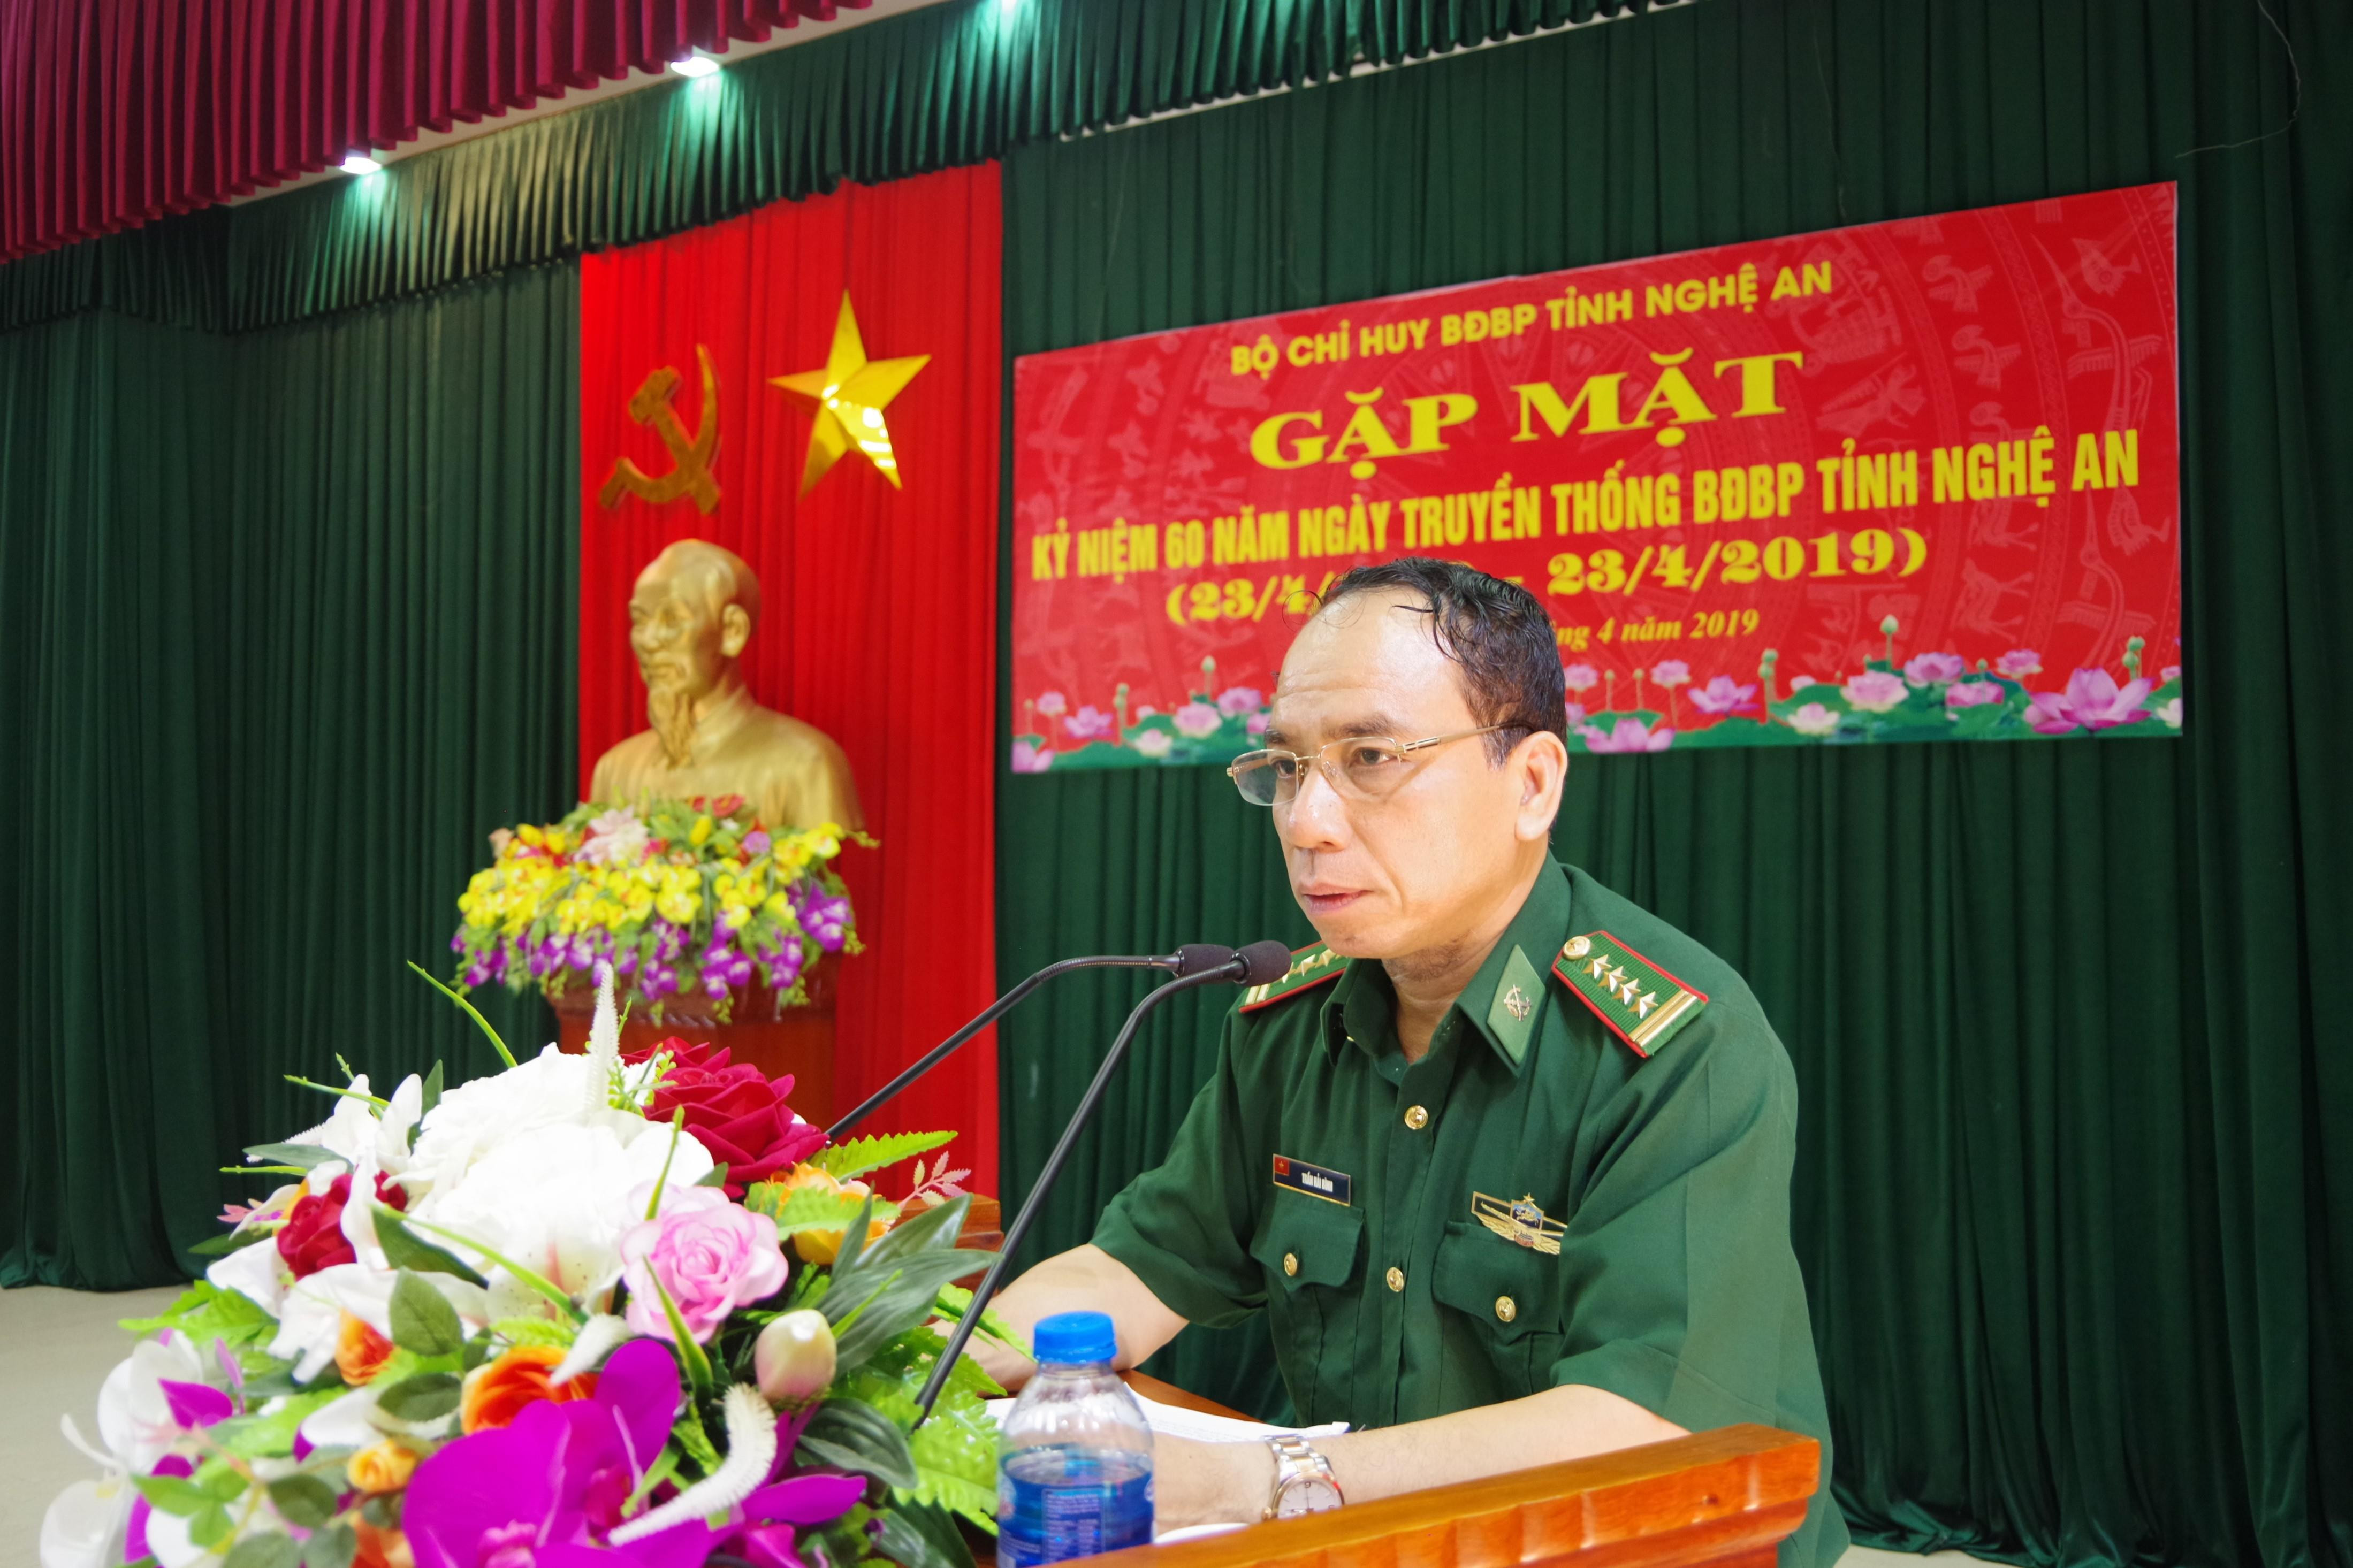 Đại tá Trần Hải Bình, Ủy viên Ban chấp hành Đảng bộ tỉnh, Chỉ huy trưởng BĐBP tỉnh phát biểu tại buổi gặp mặt